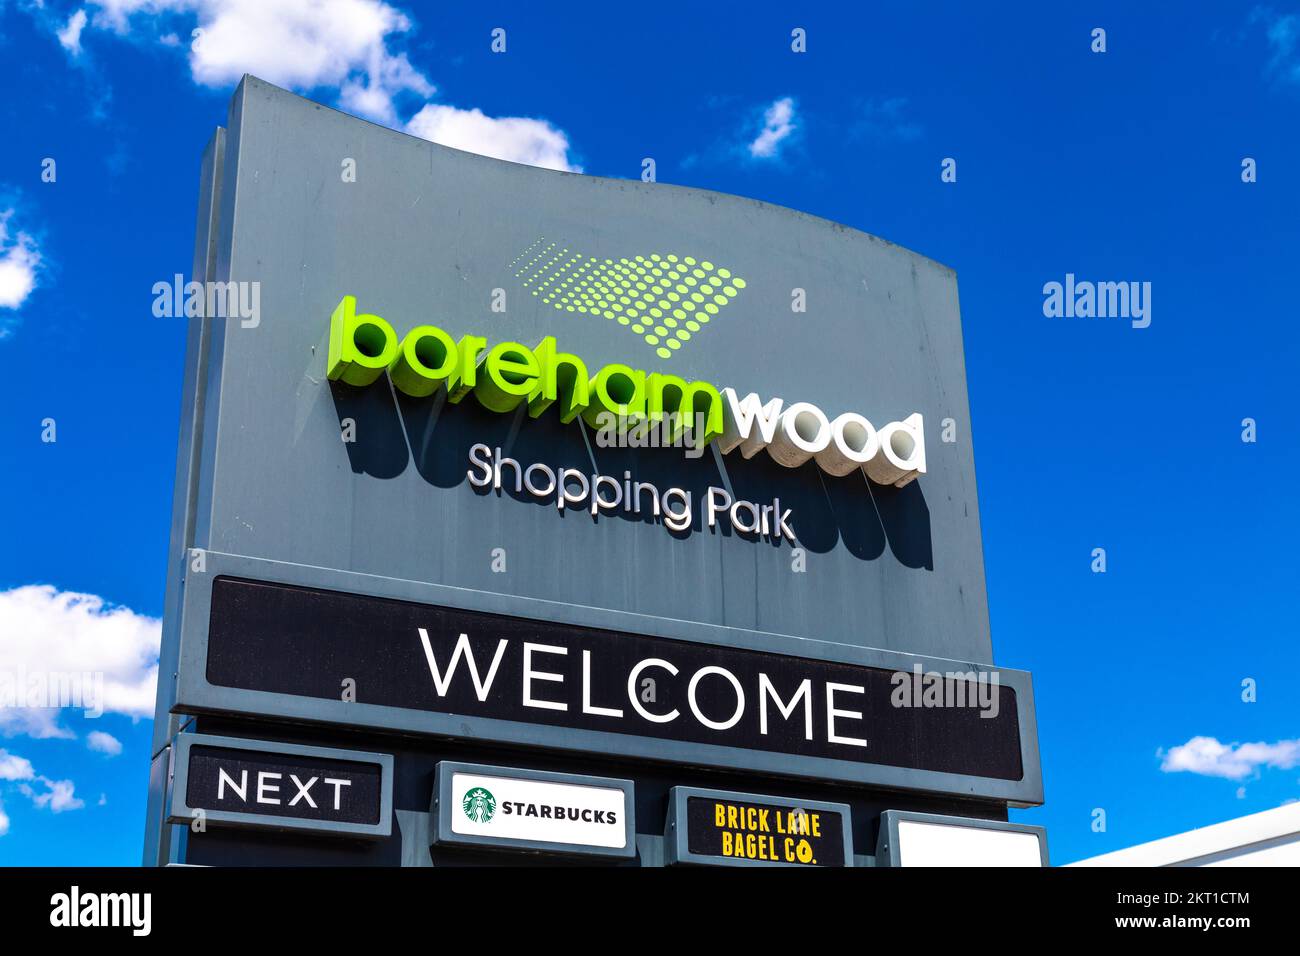 Borehamwood Shopping Park, Borehamwood, UK Stock Photo